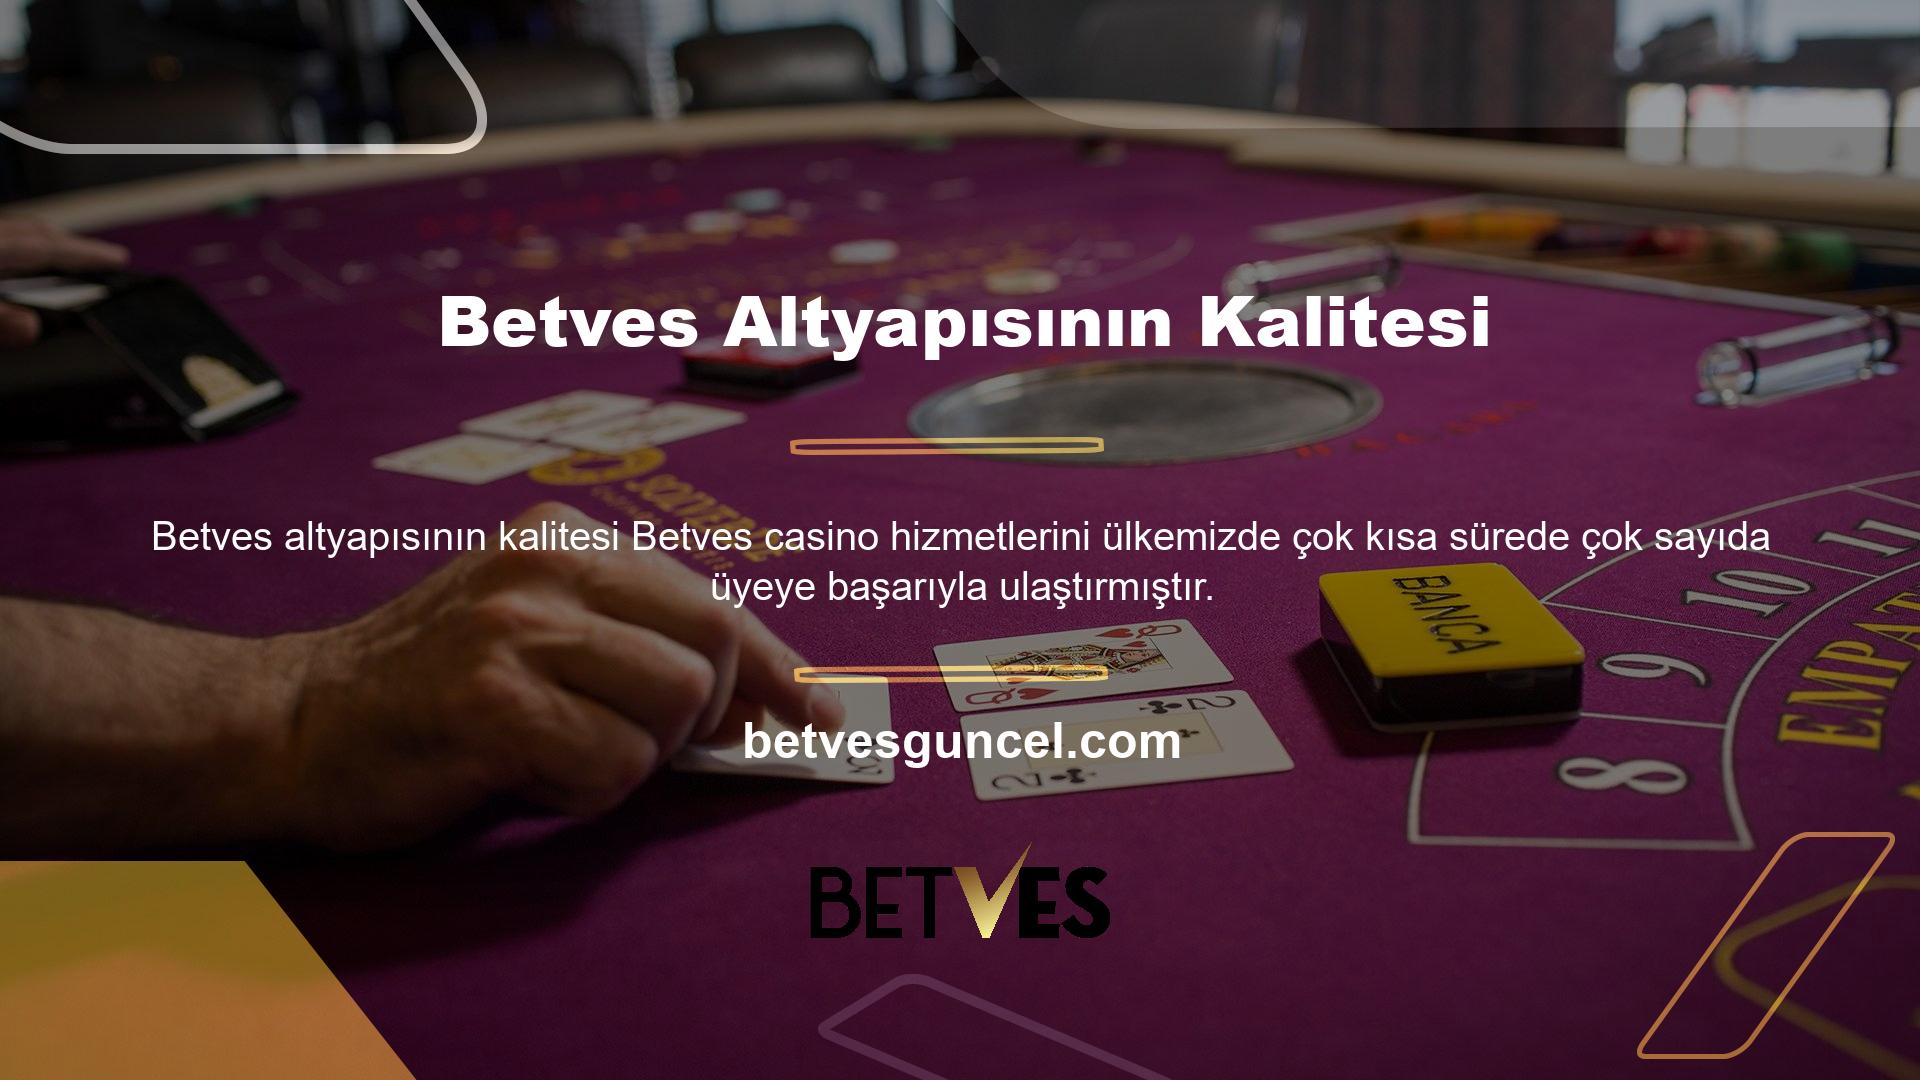 Betves casino altyapısı için Canlı Bahis Ofisi'nin farklı proje firması ile anlaşması bulunmaktadır